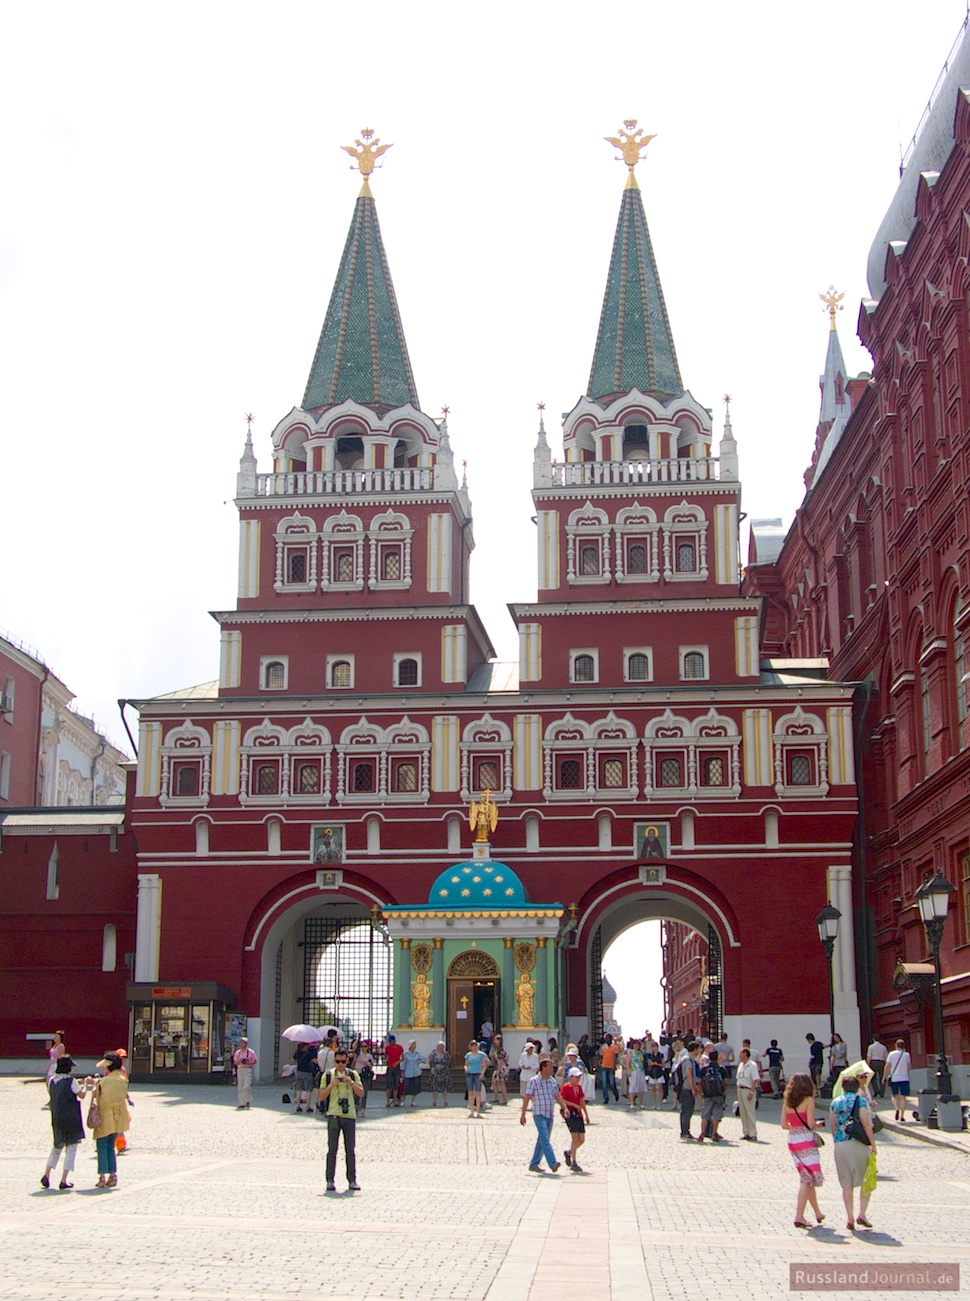 Roter Platz - Moskau Sehenswürdigkeiten – RusslandJournal.de